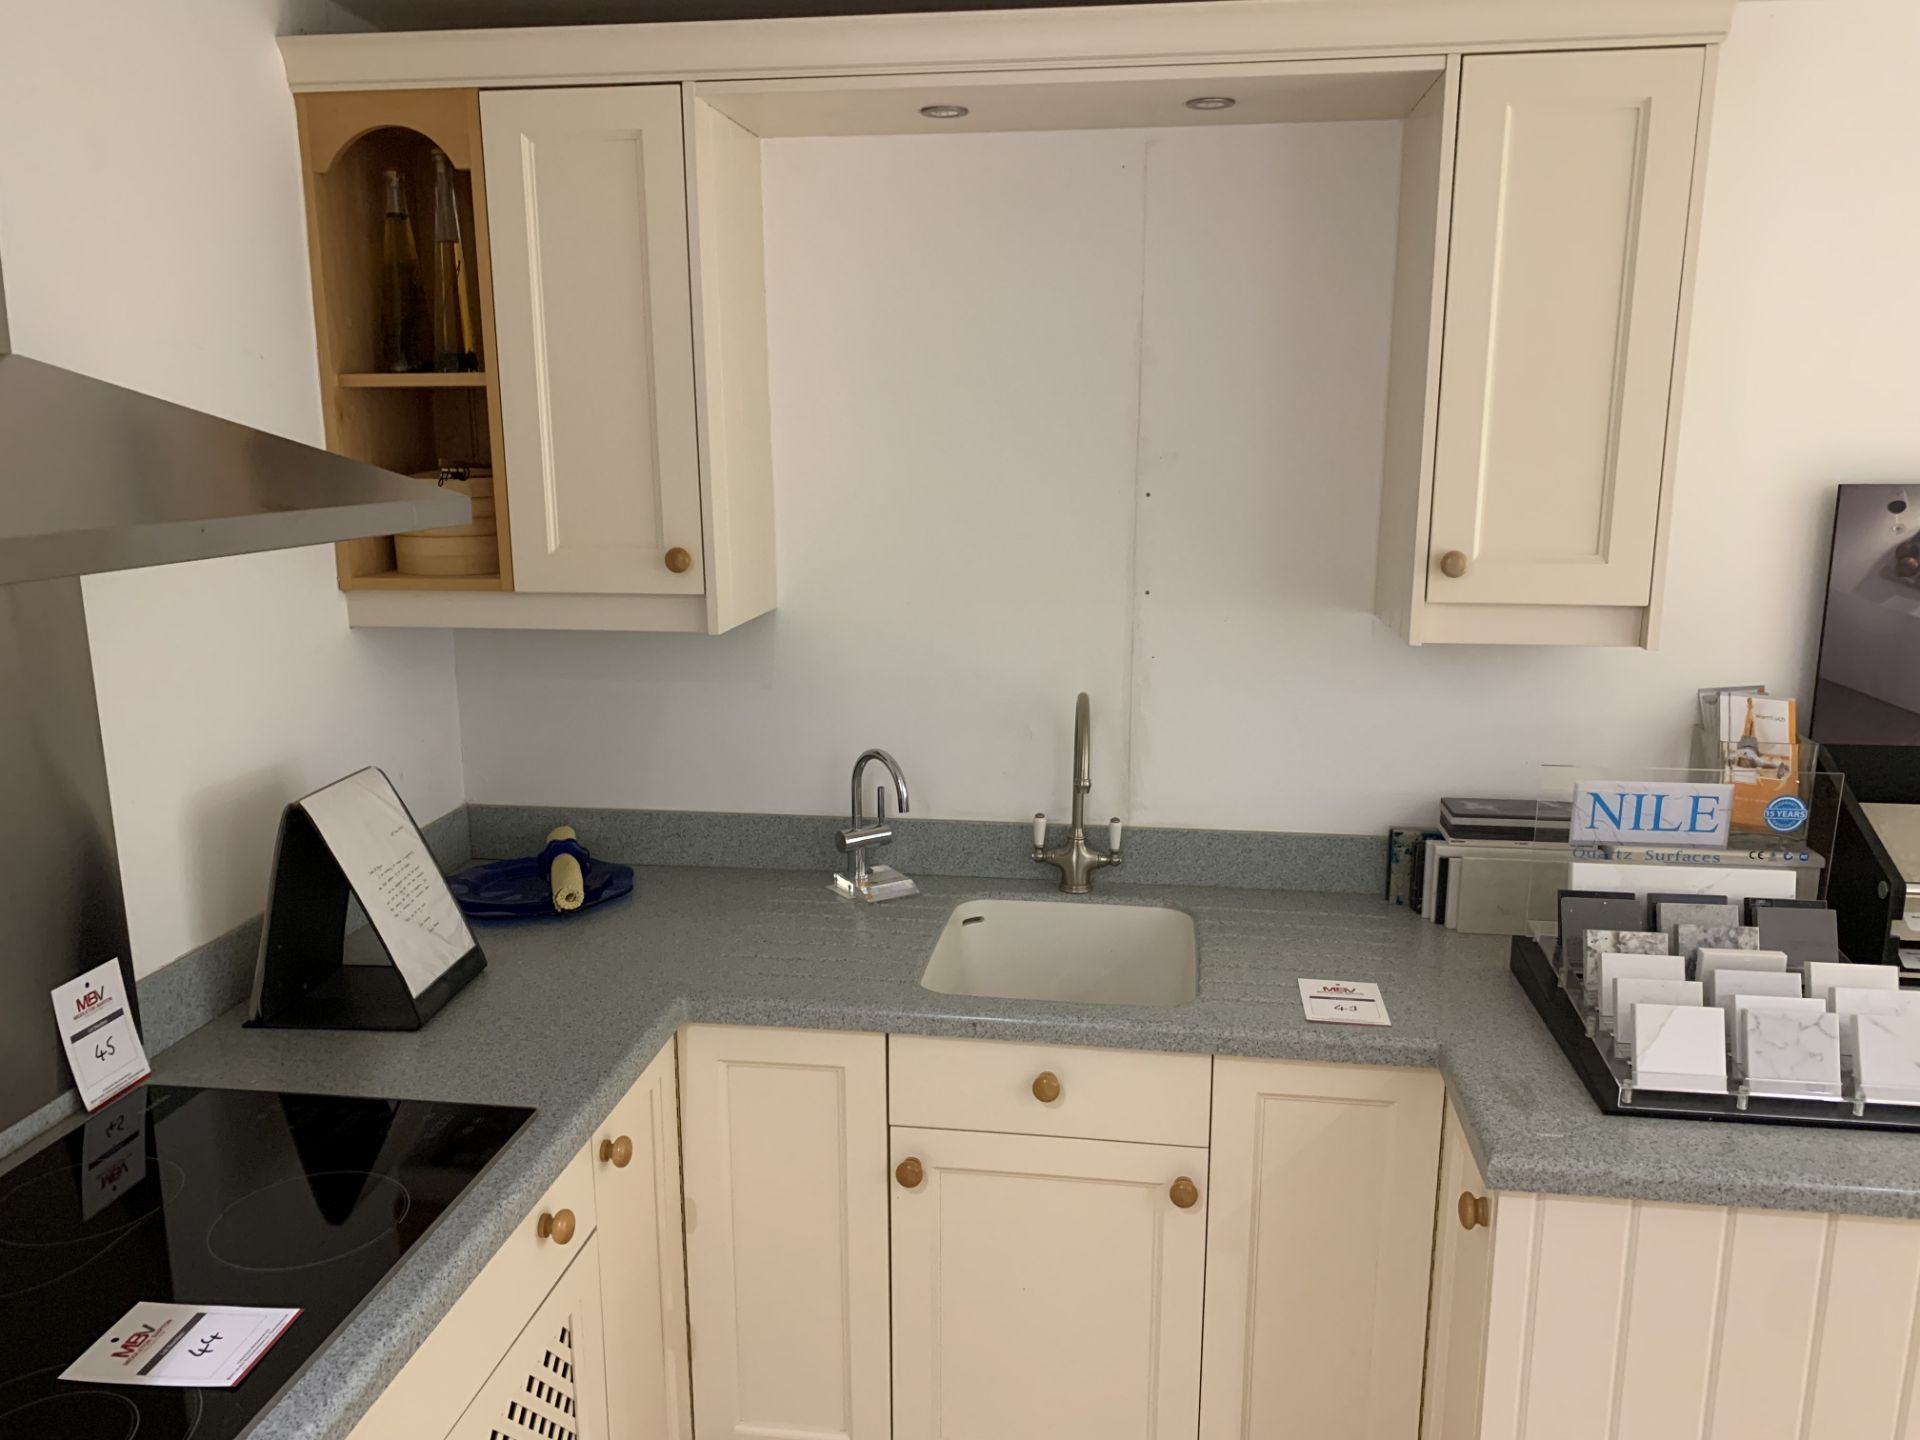 Display corner kitchen in cream with flecked pale blue Corian work surface - Bild 2 aus 3